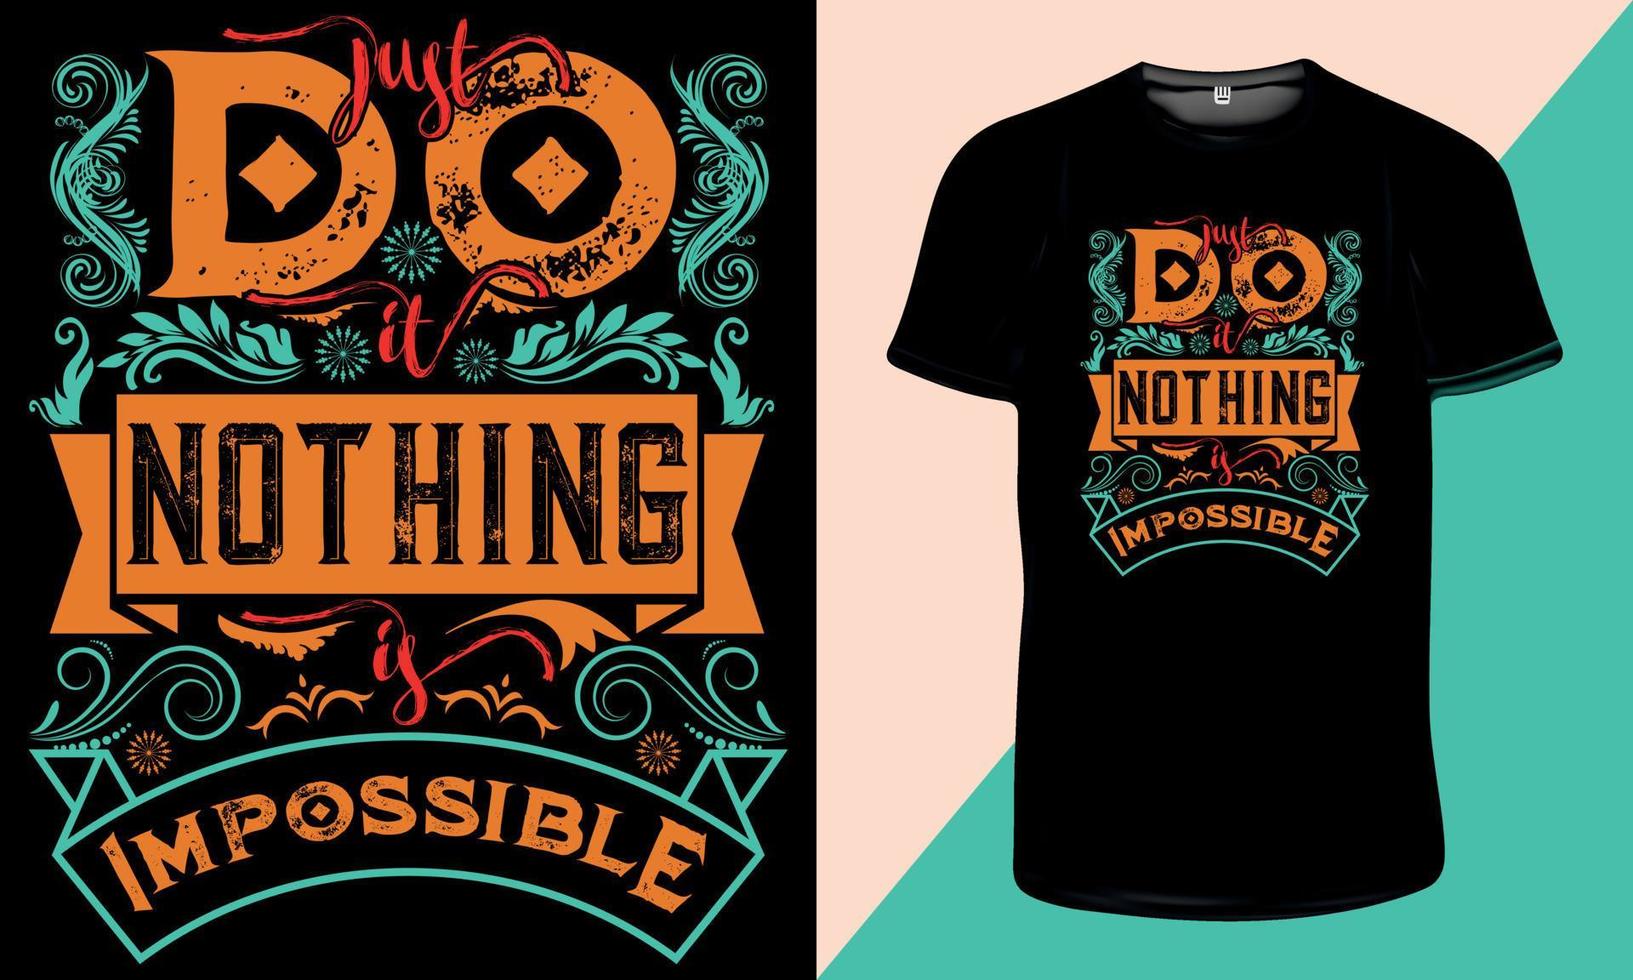 bara gör det ingenting är omöjligt motiverande typografi t-shirt design vektor